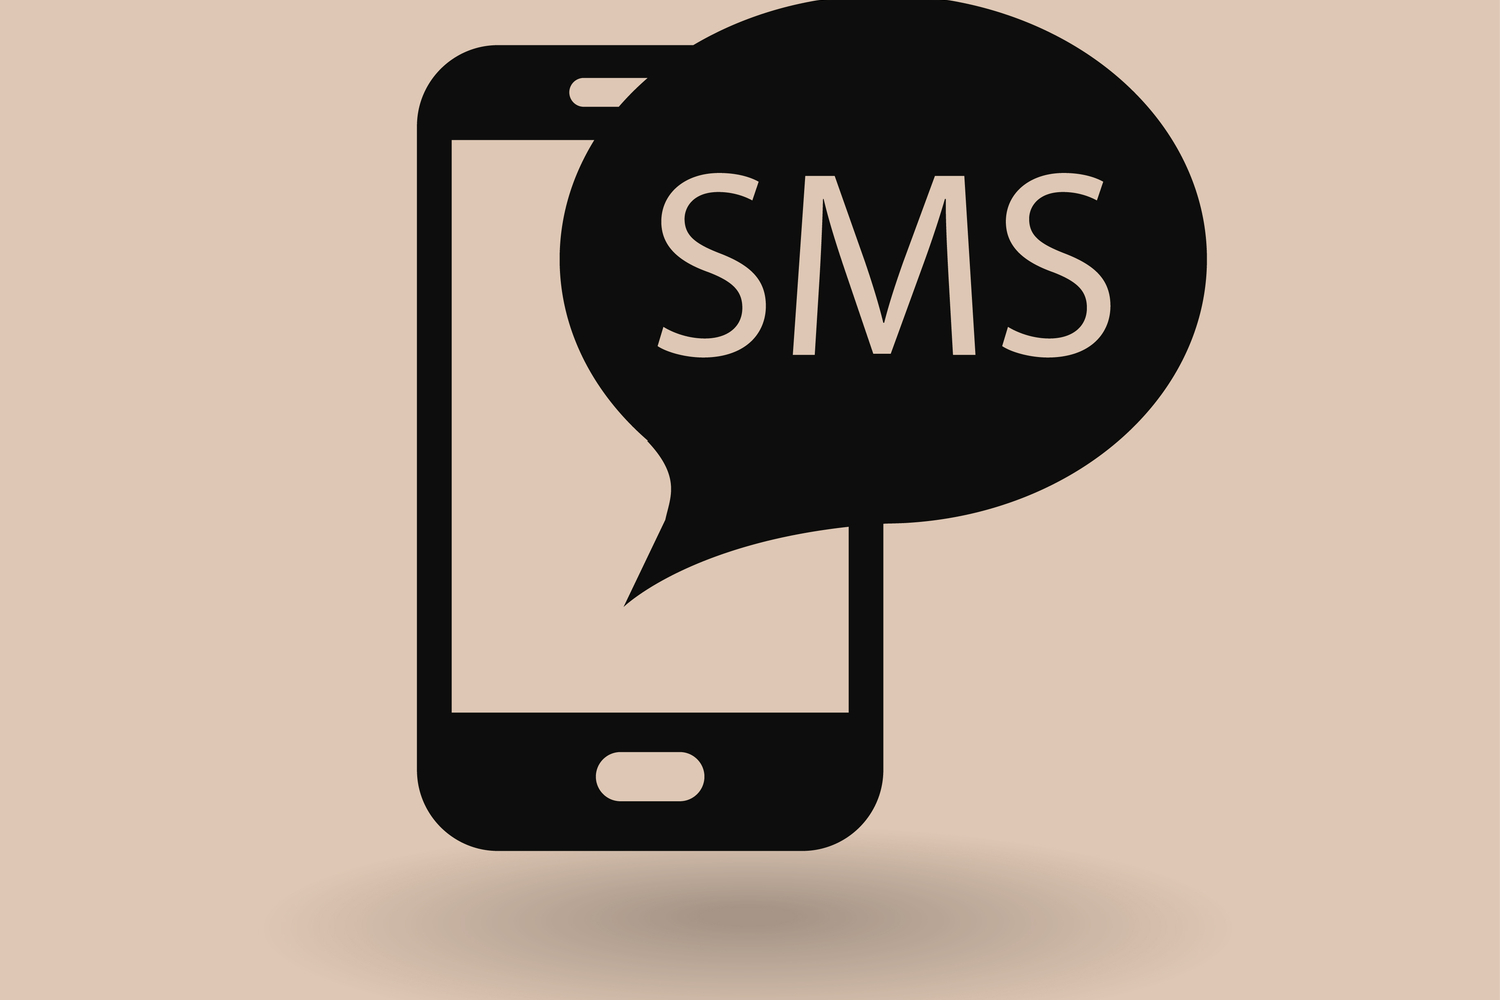 Иконка SMS. Иконка смс вектор. Иконка смс телефона в черном фоне картинки. SMS Графика. Значок смс на экране